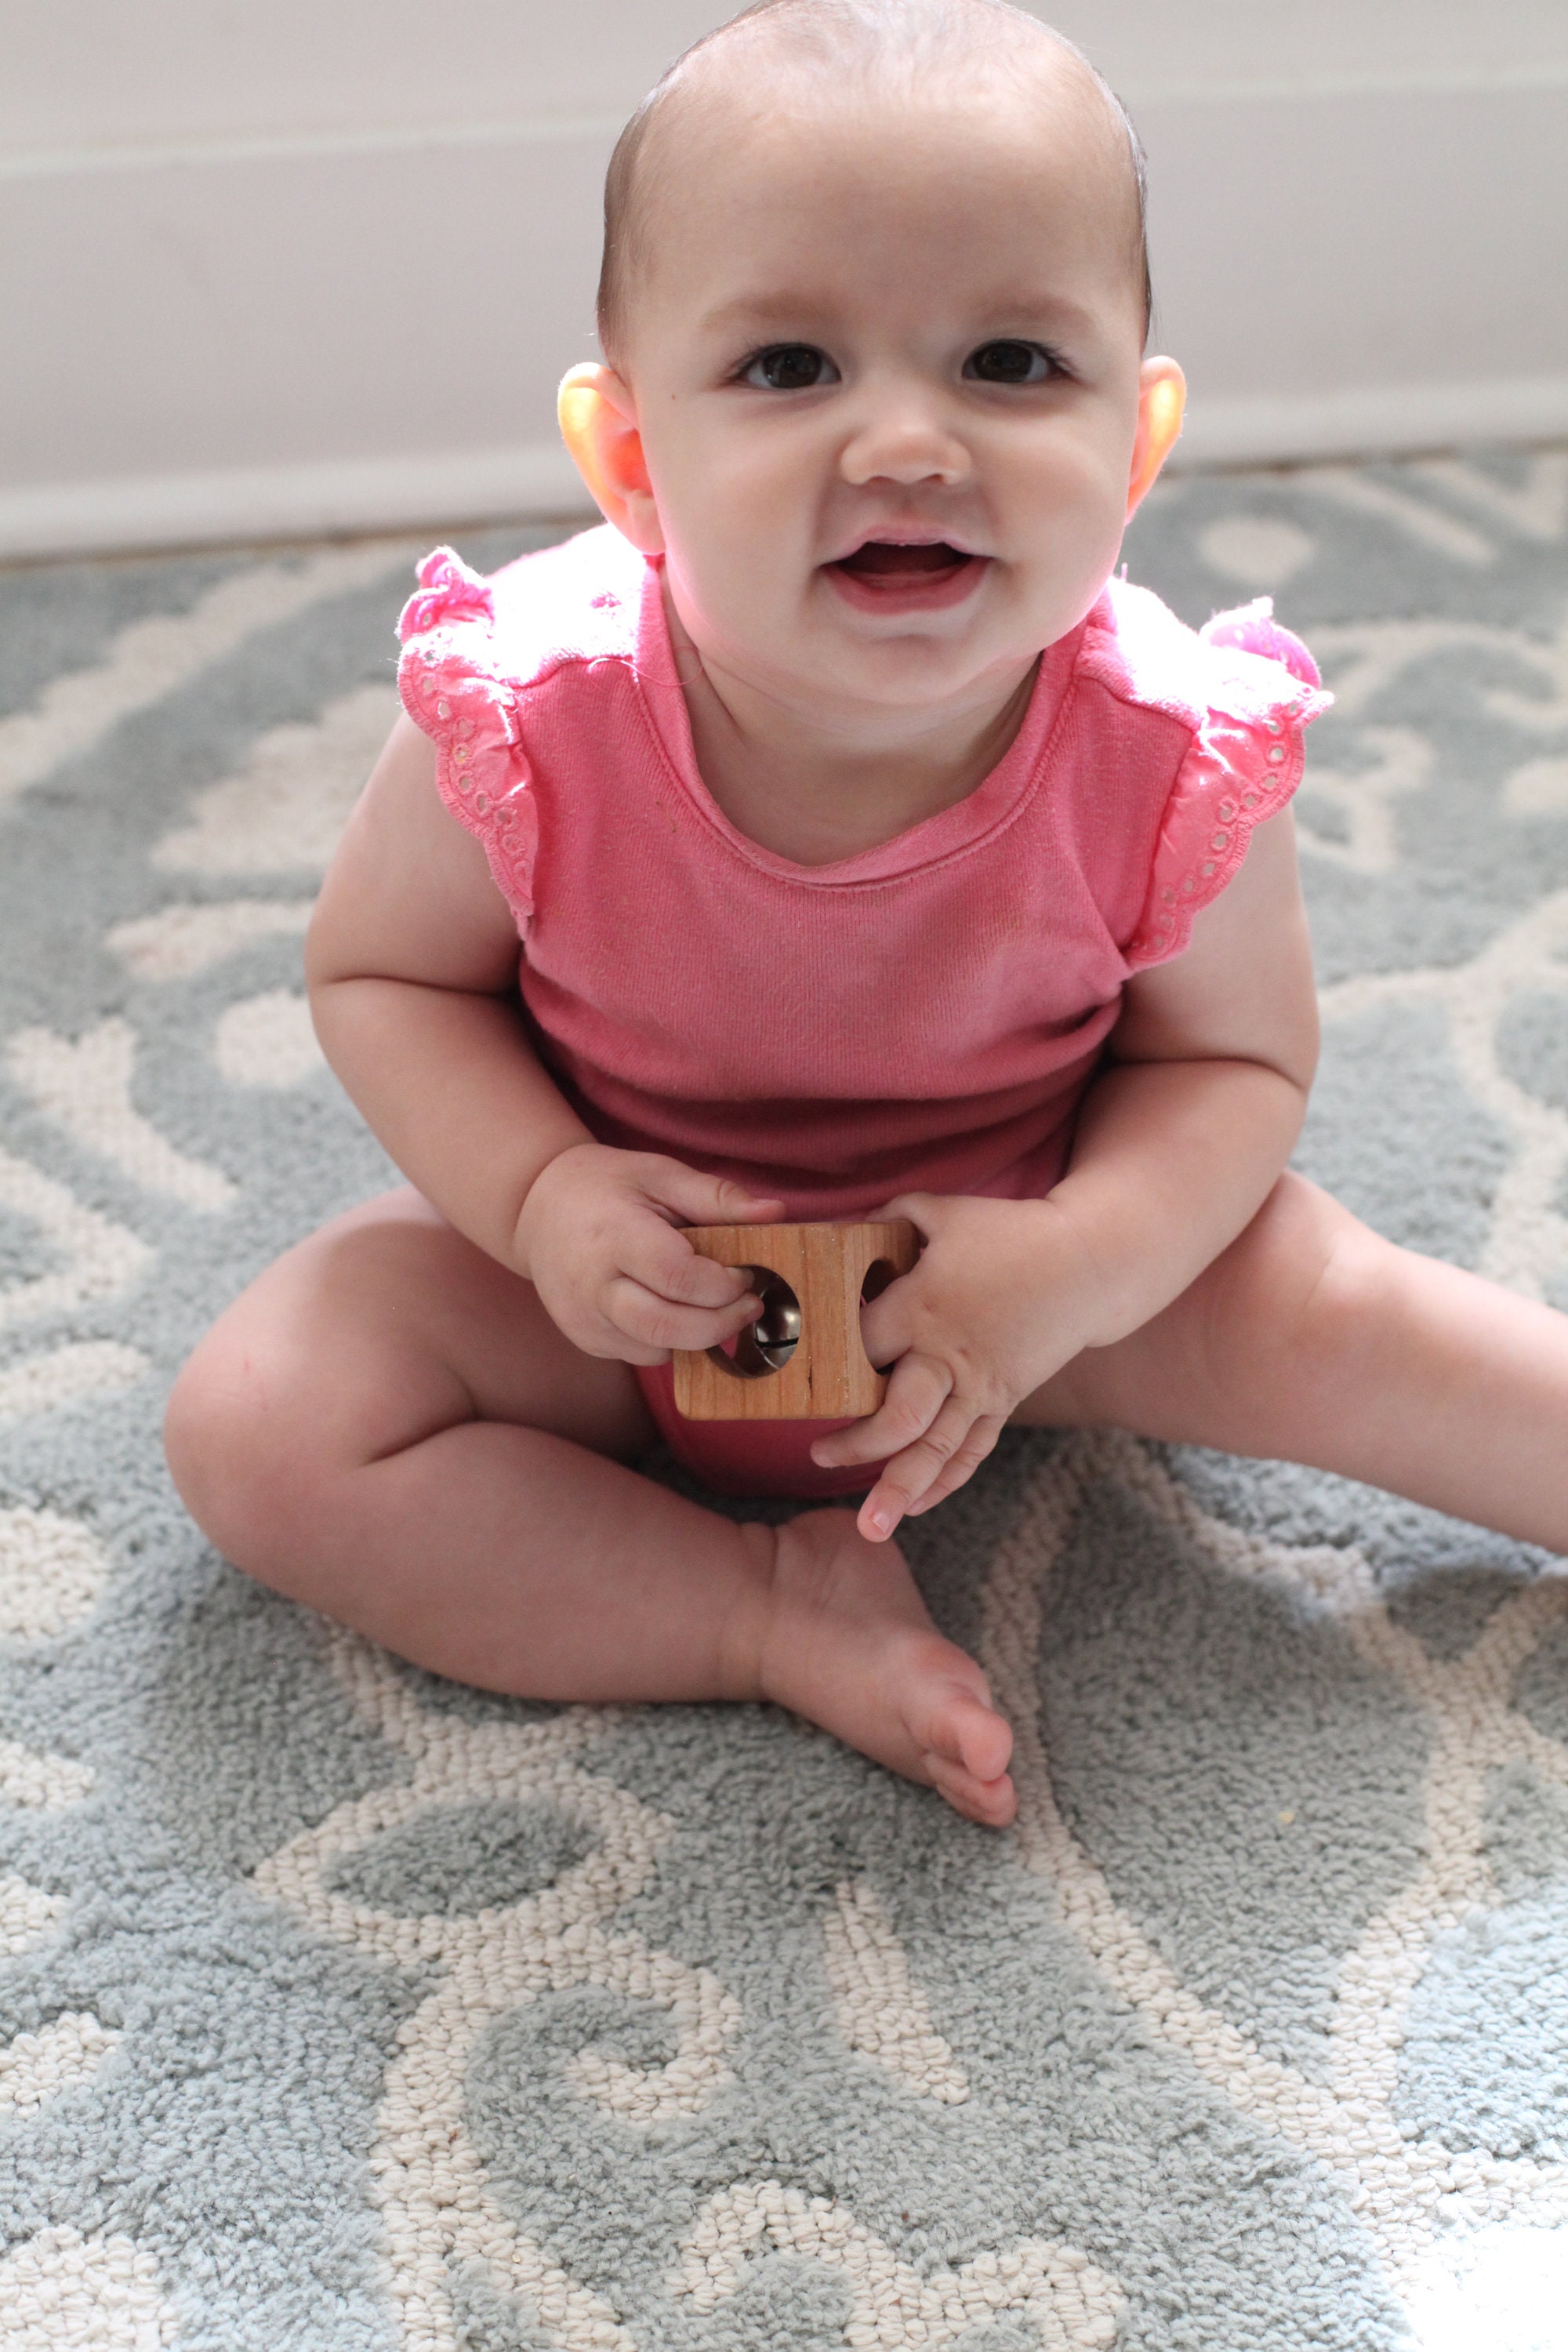 Activity-board Jouet pour bébé de 6 mois, hochet, balle de motricité, jouet  de motricité à secouer et à ramper